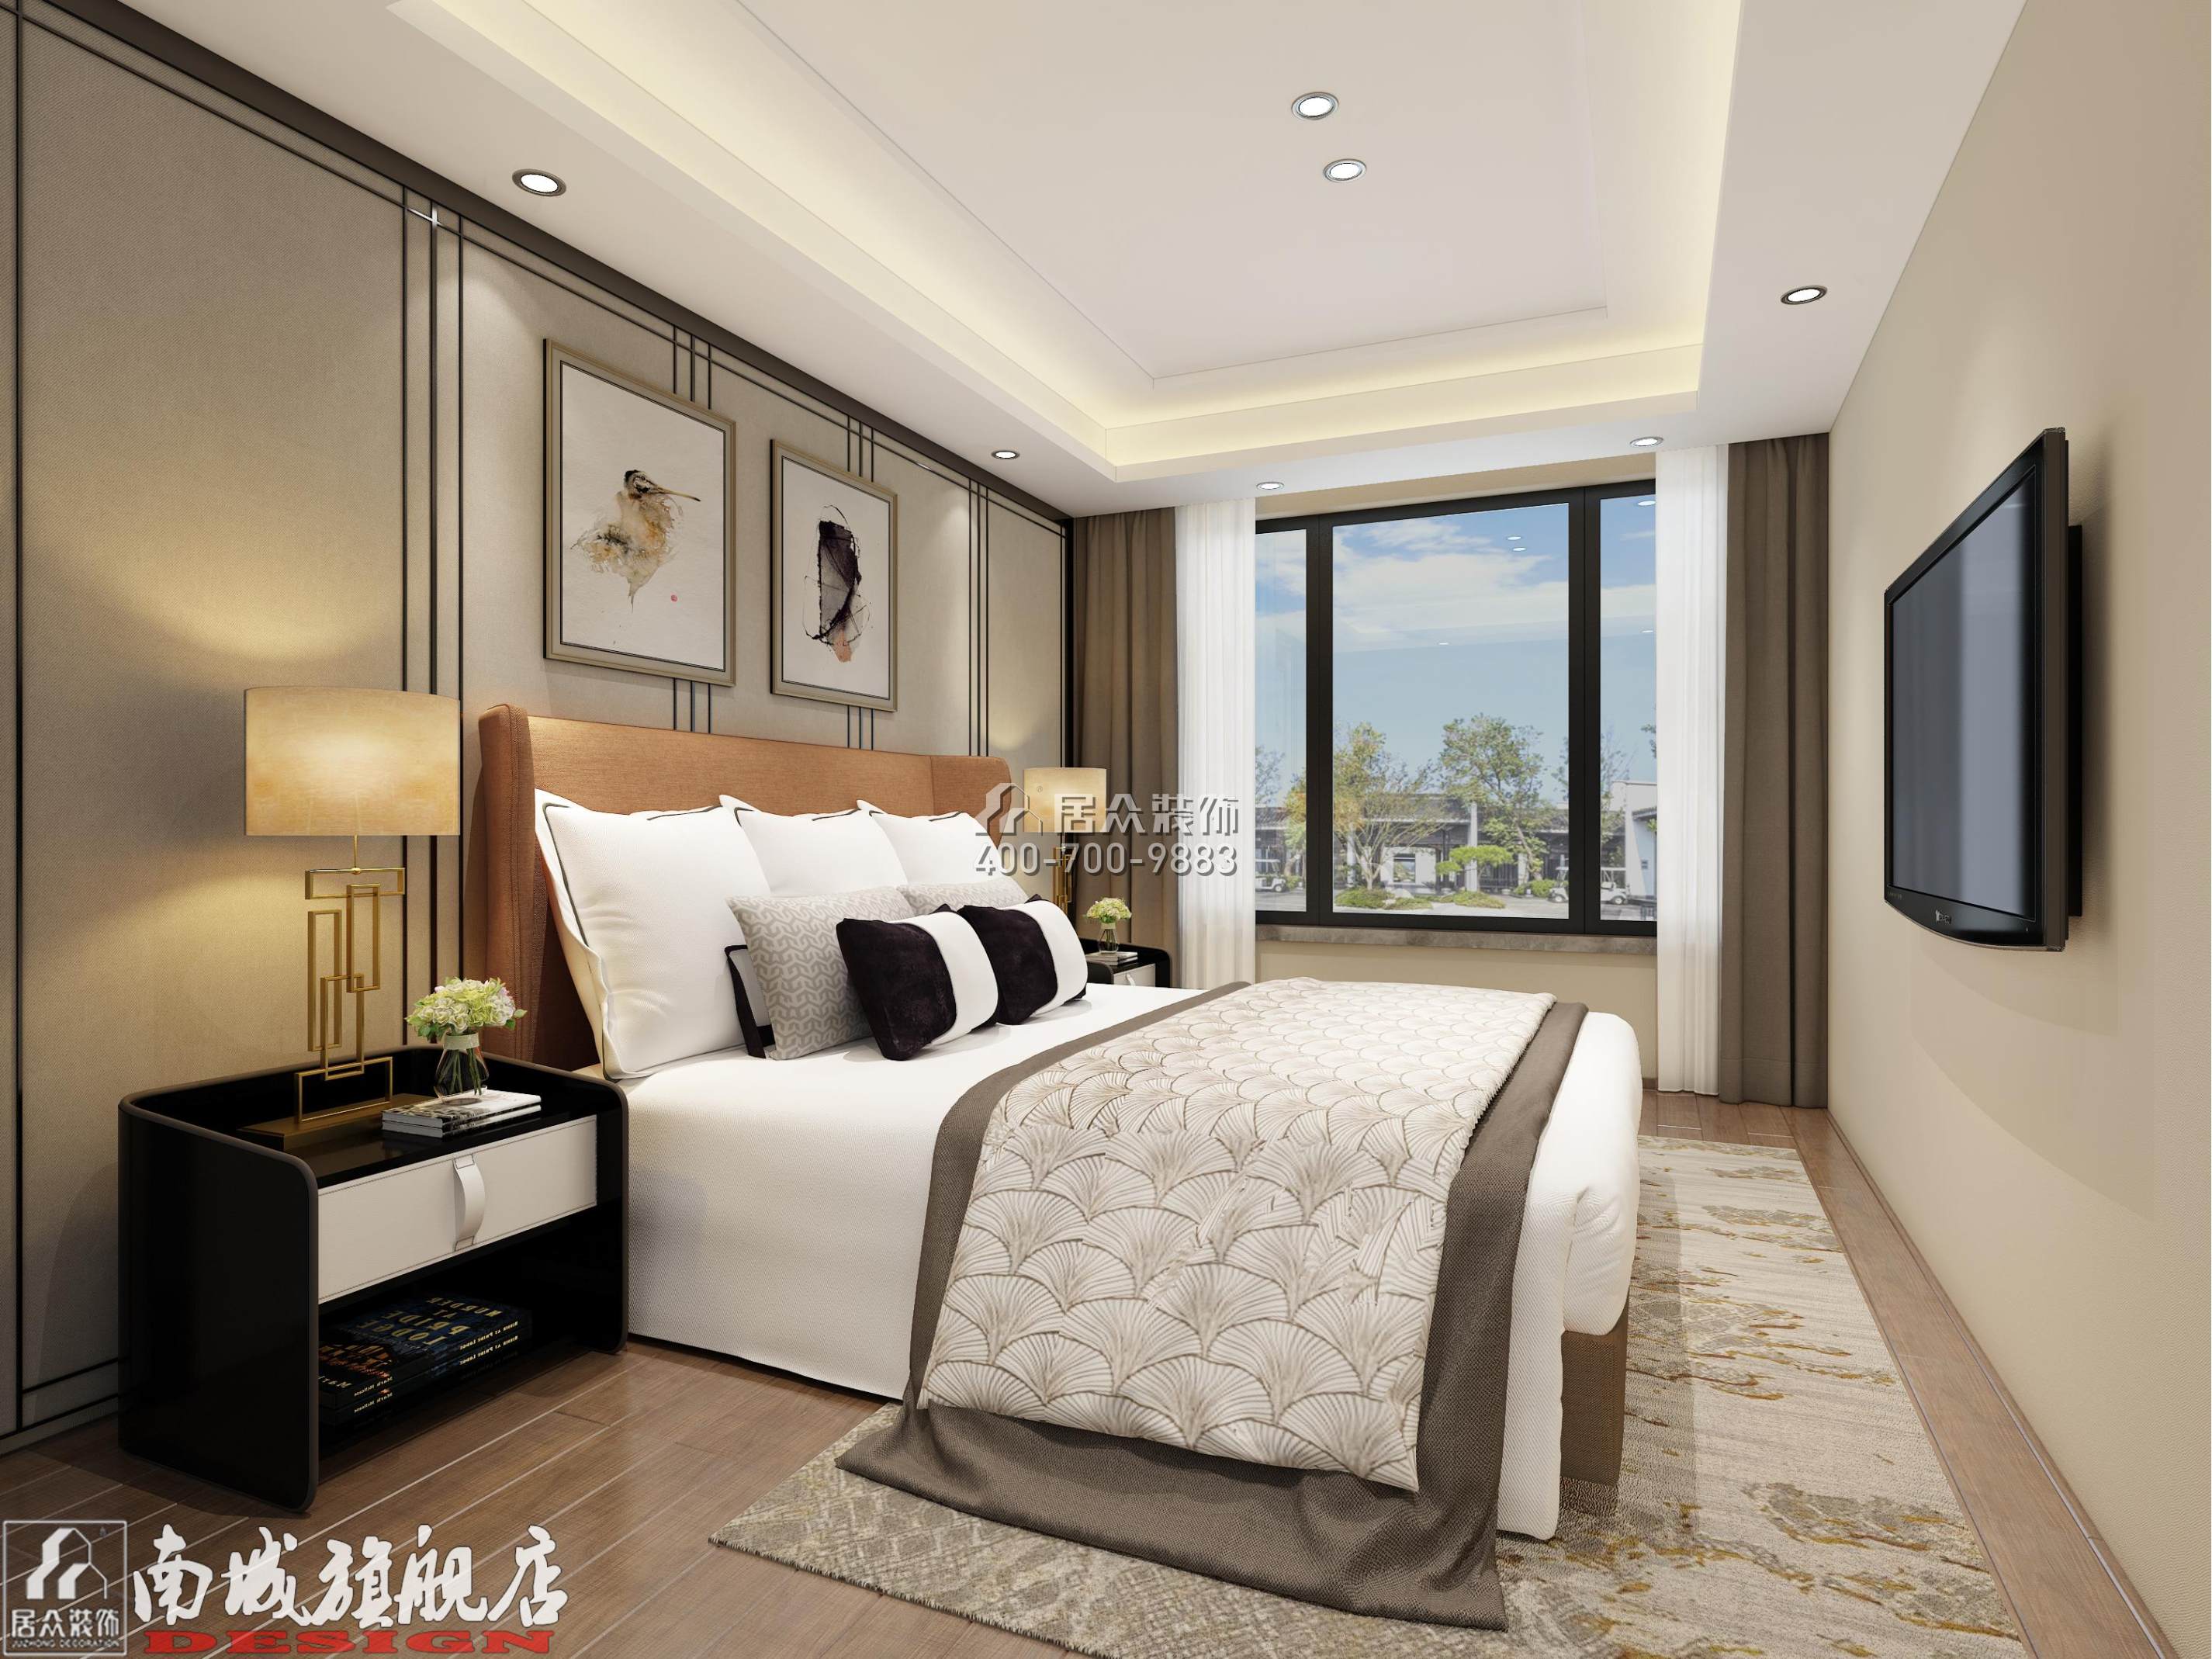 金茂梅溪湖165平方米现代简约风格平层户型卧室装修效果图